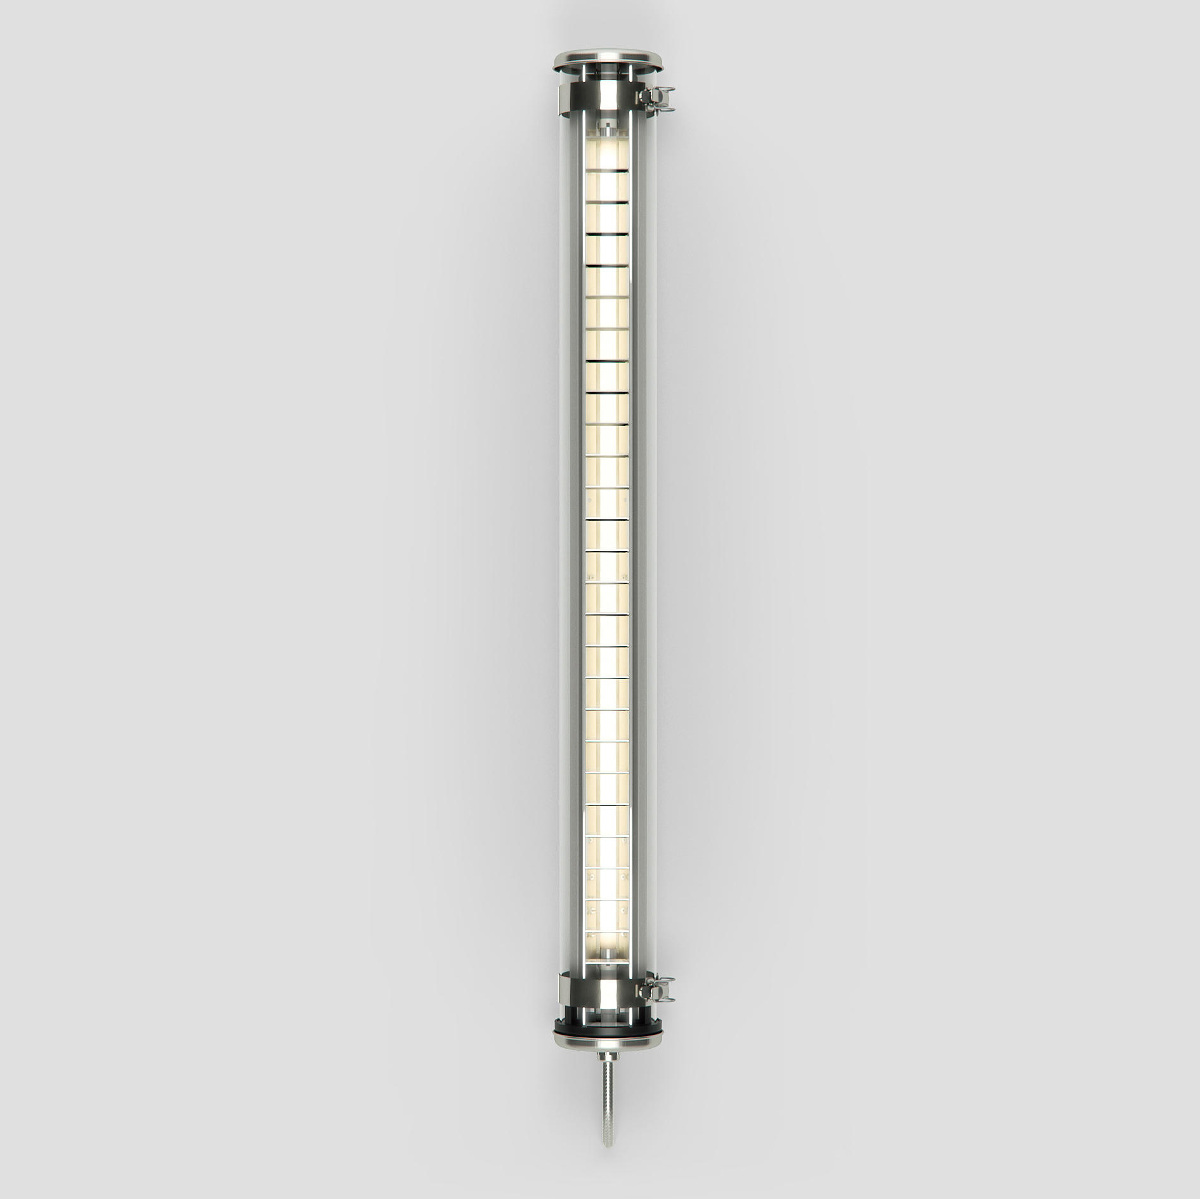 Röhrenleuchte BRUEGHEL mit IP68 (100/130 cm): Die Glas-Röhrenleuchte BRUEGHEL (kleines Modell, 100 cm lang, silber mit Edelstahl-Armaturen)